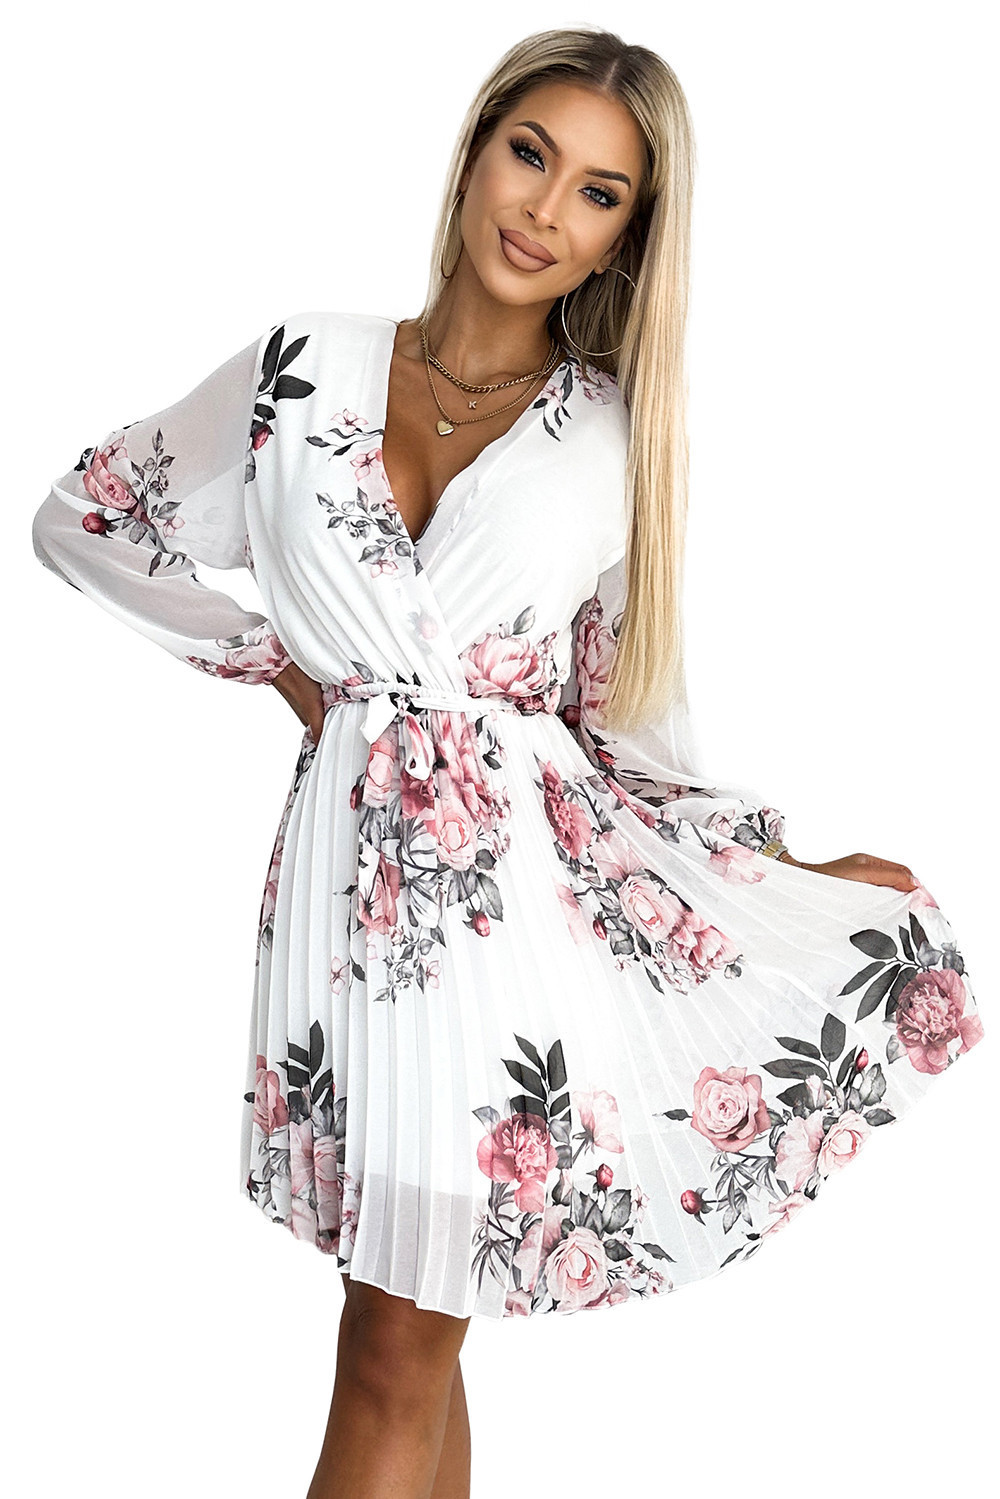 YSABEL - Bílé dámské plisované šaty se vzorem růží, výstřihem, dlouhými rukávy a páskem 415-2 UNI